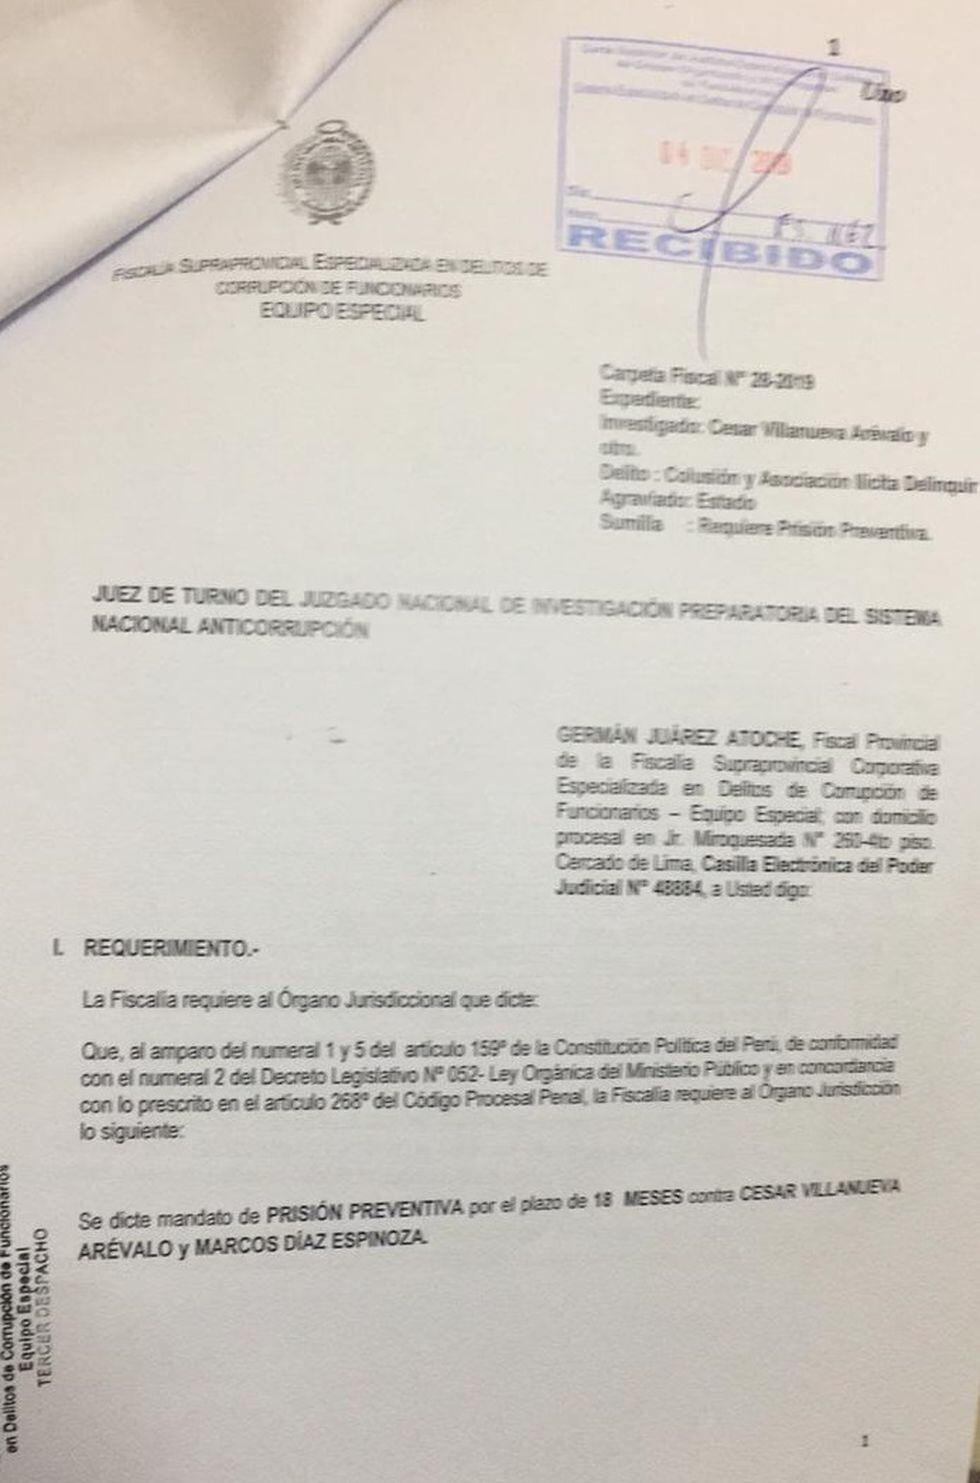 El fiscal Germán Juárez Atoche solicita la prisión preventiva de César Villanueva.